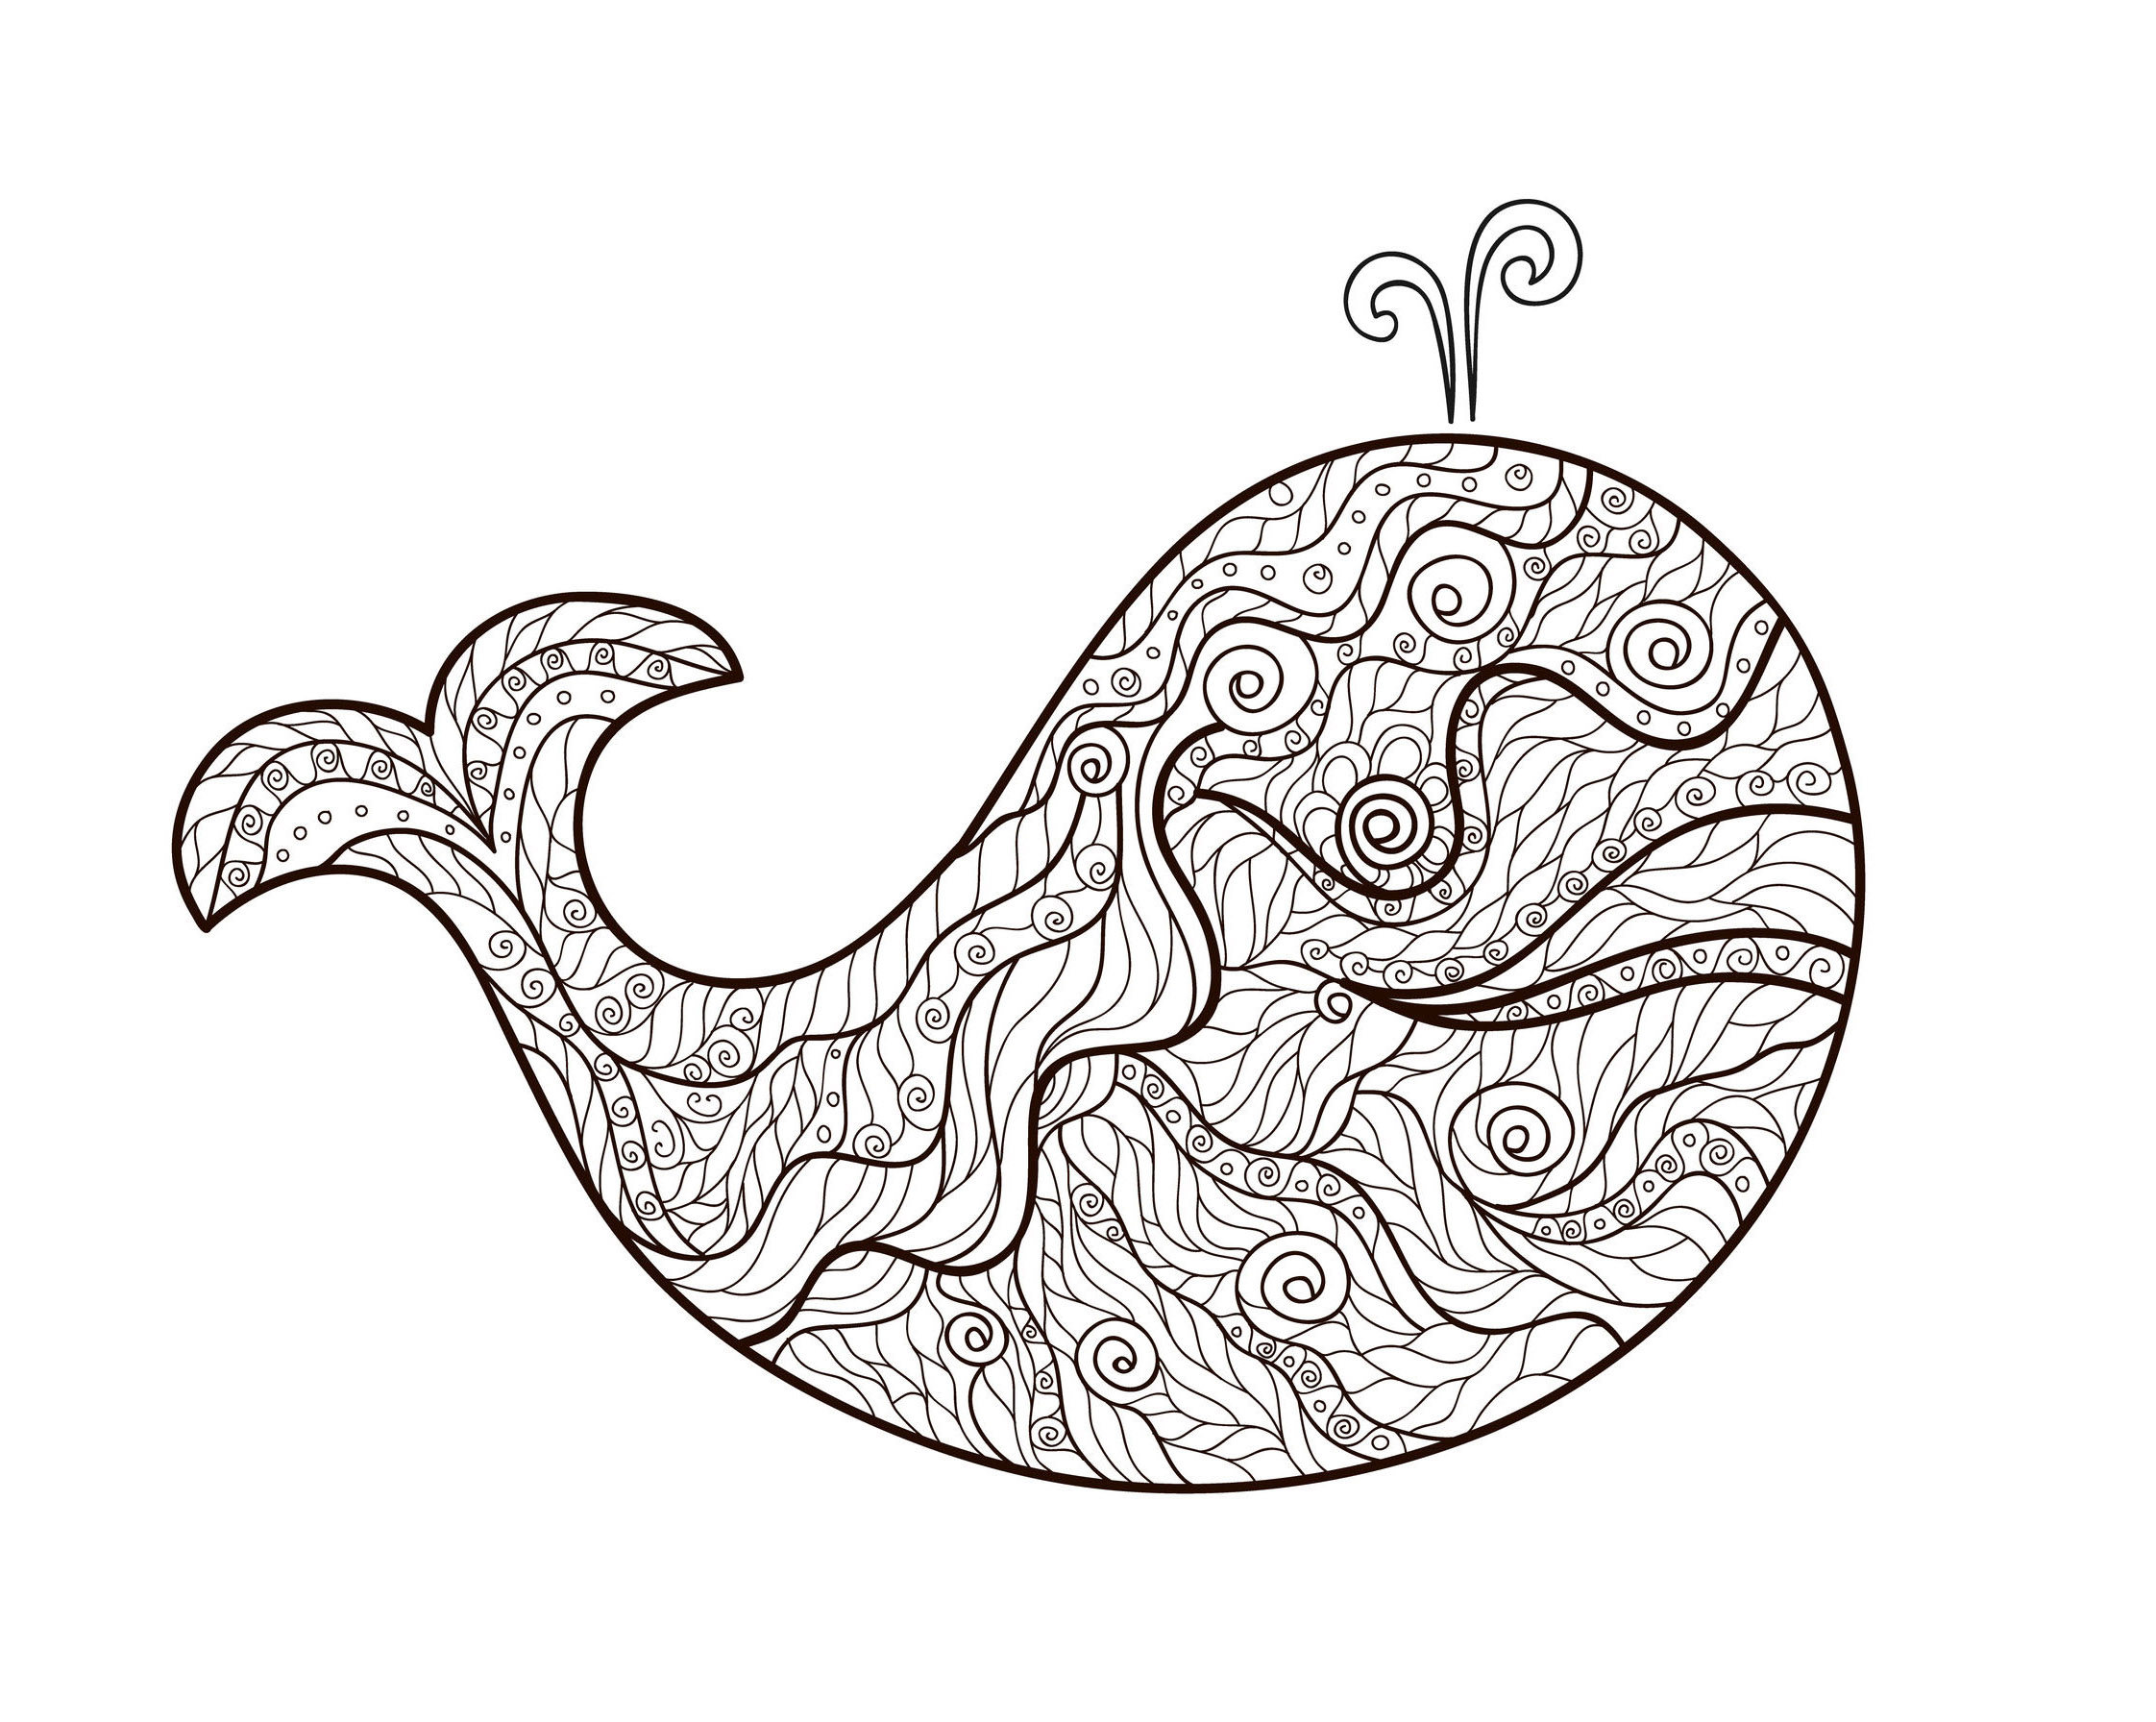 Une baleine et des motifs Zentangle simples à colorier, par Meggichka (source : 123rf)